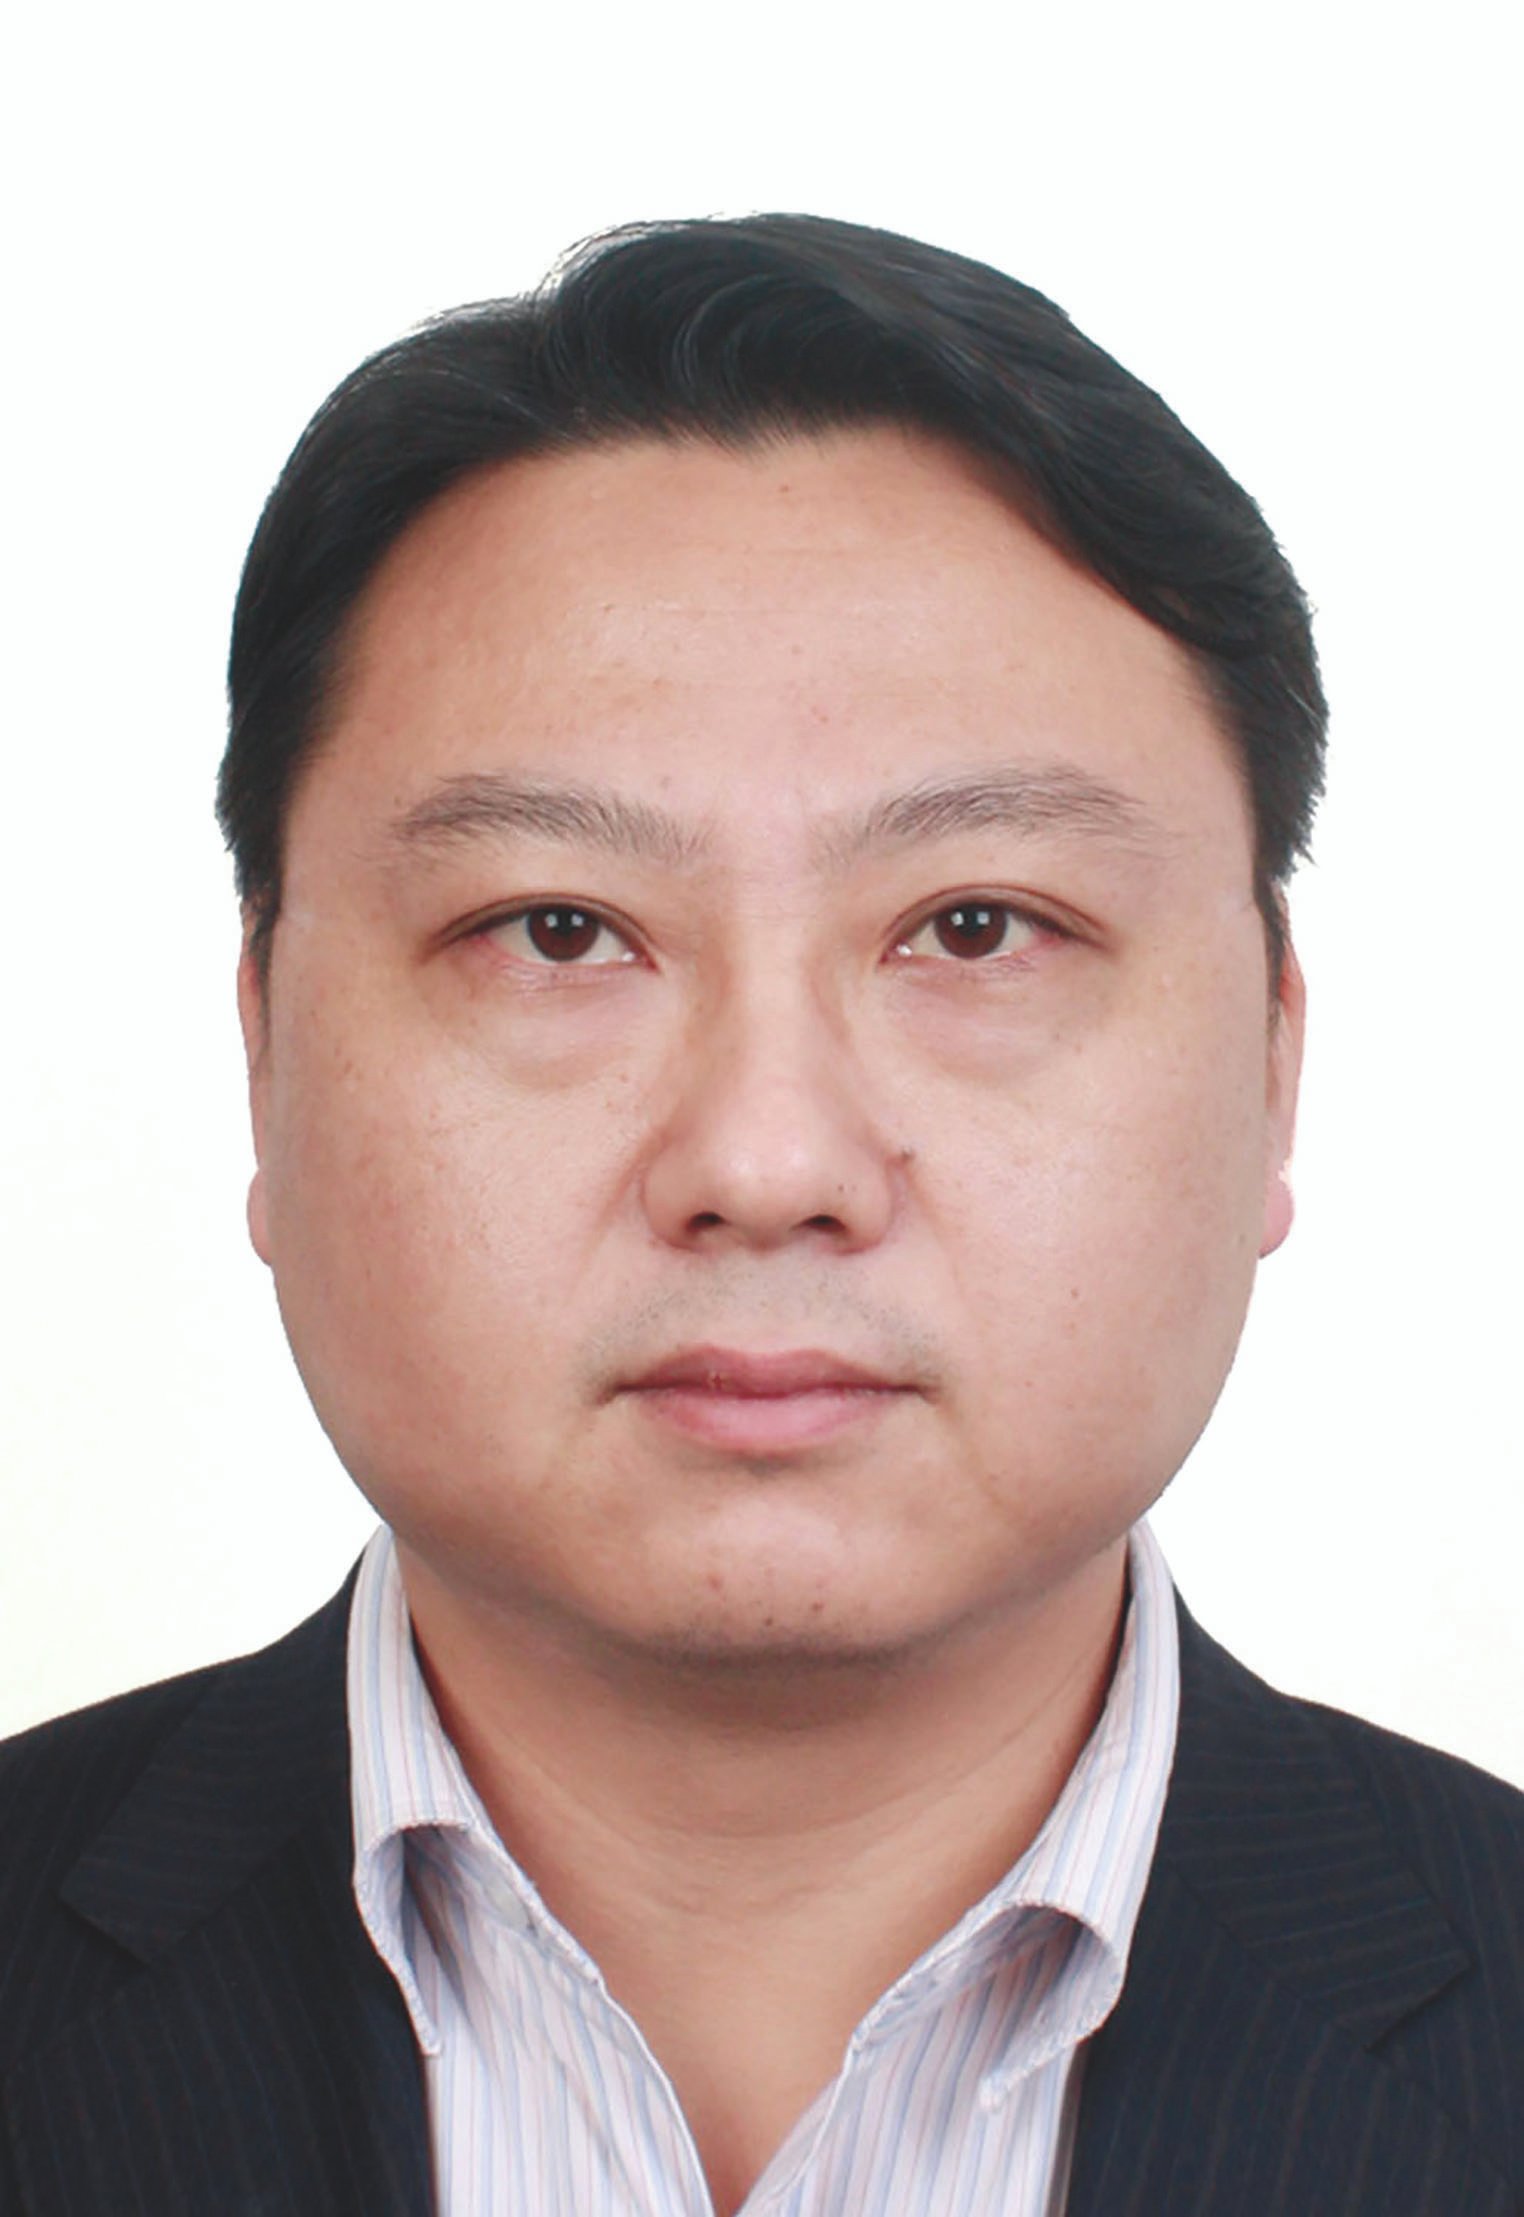 Mr Jiang Peng, director, CMC Business Development International Center